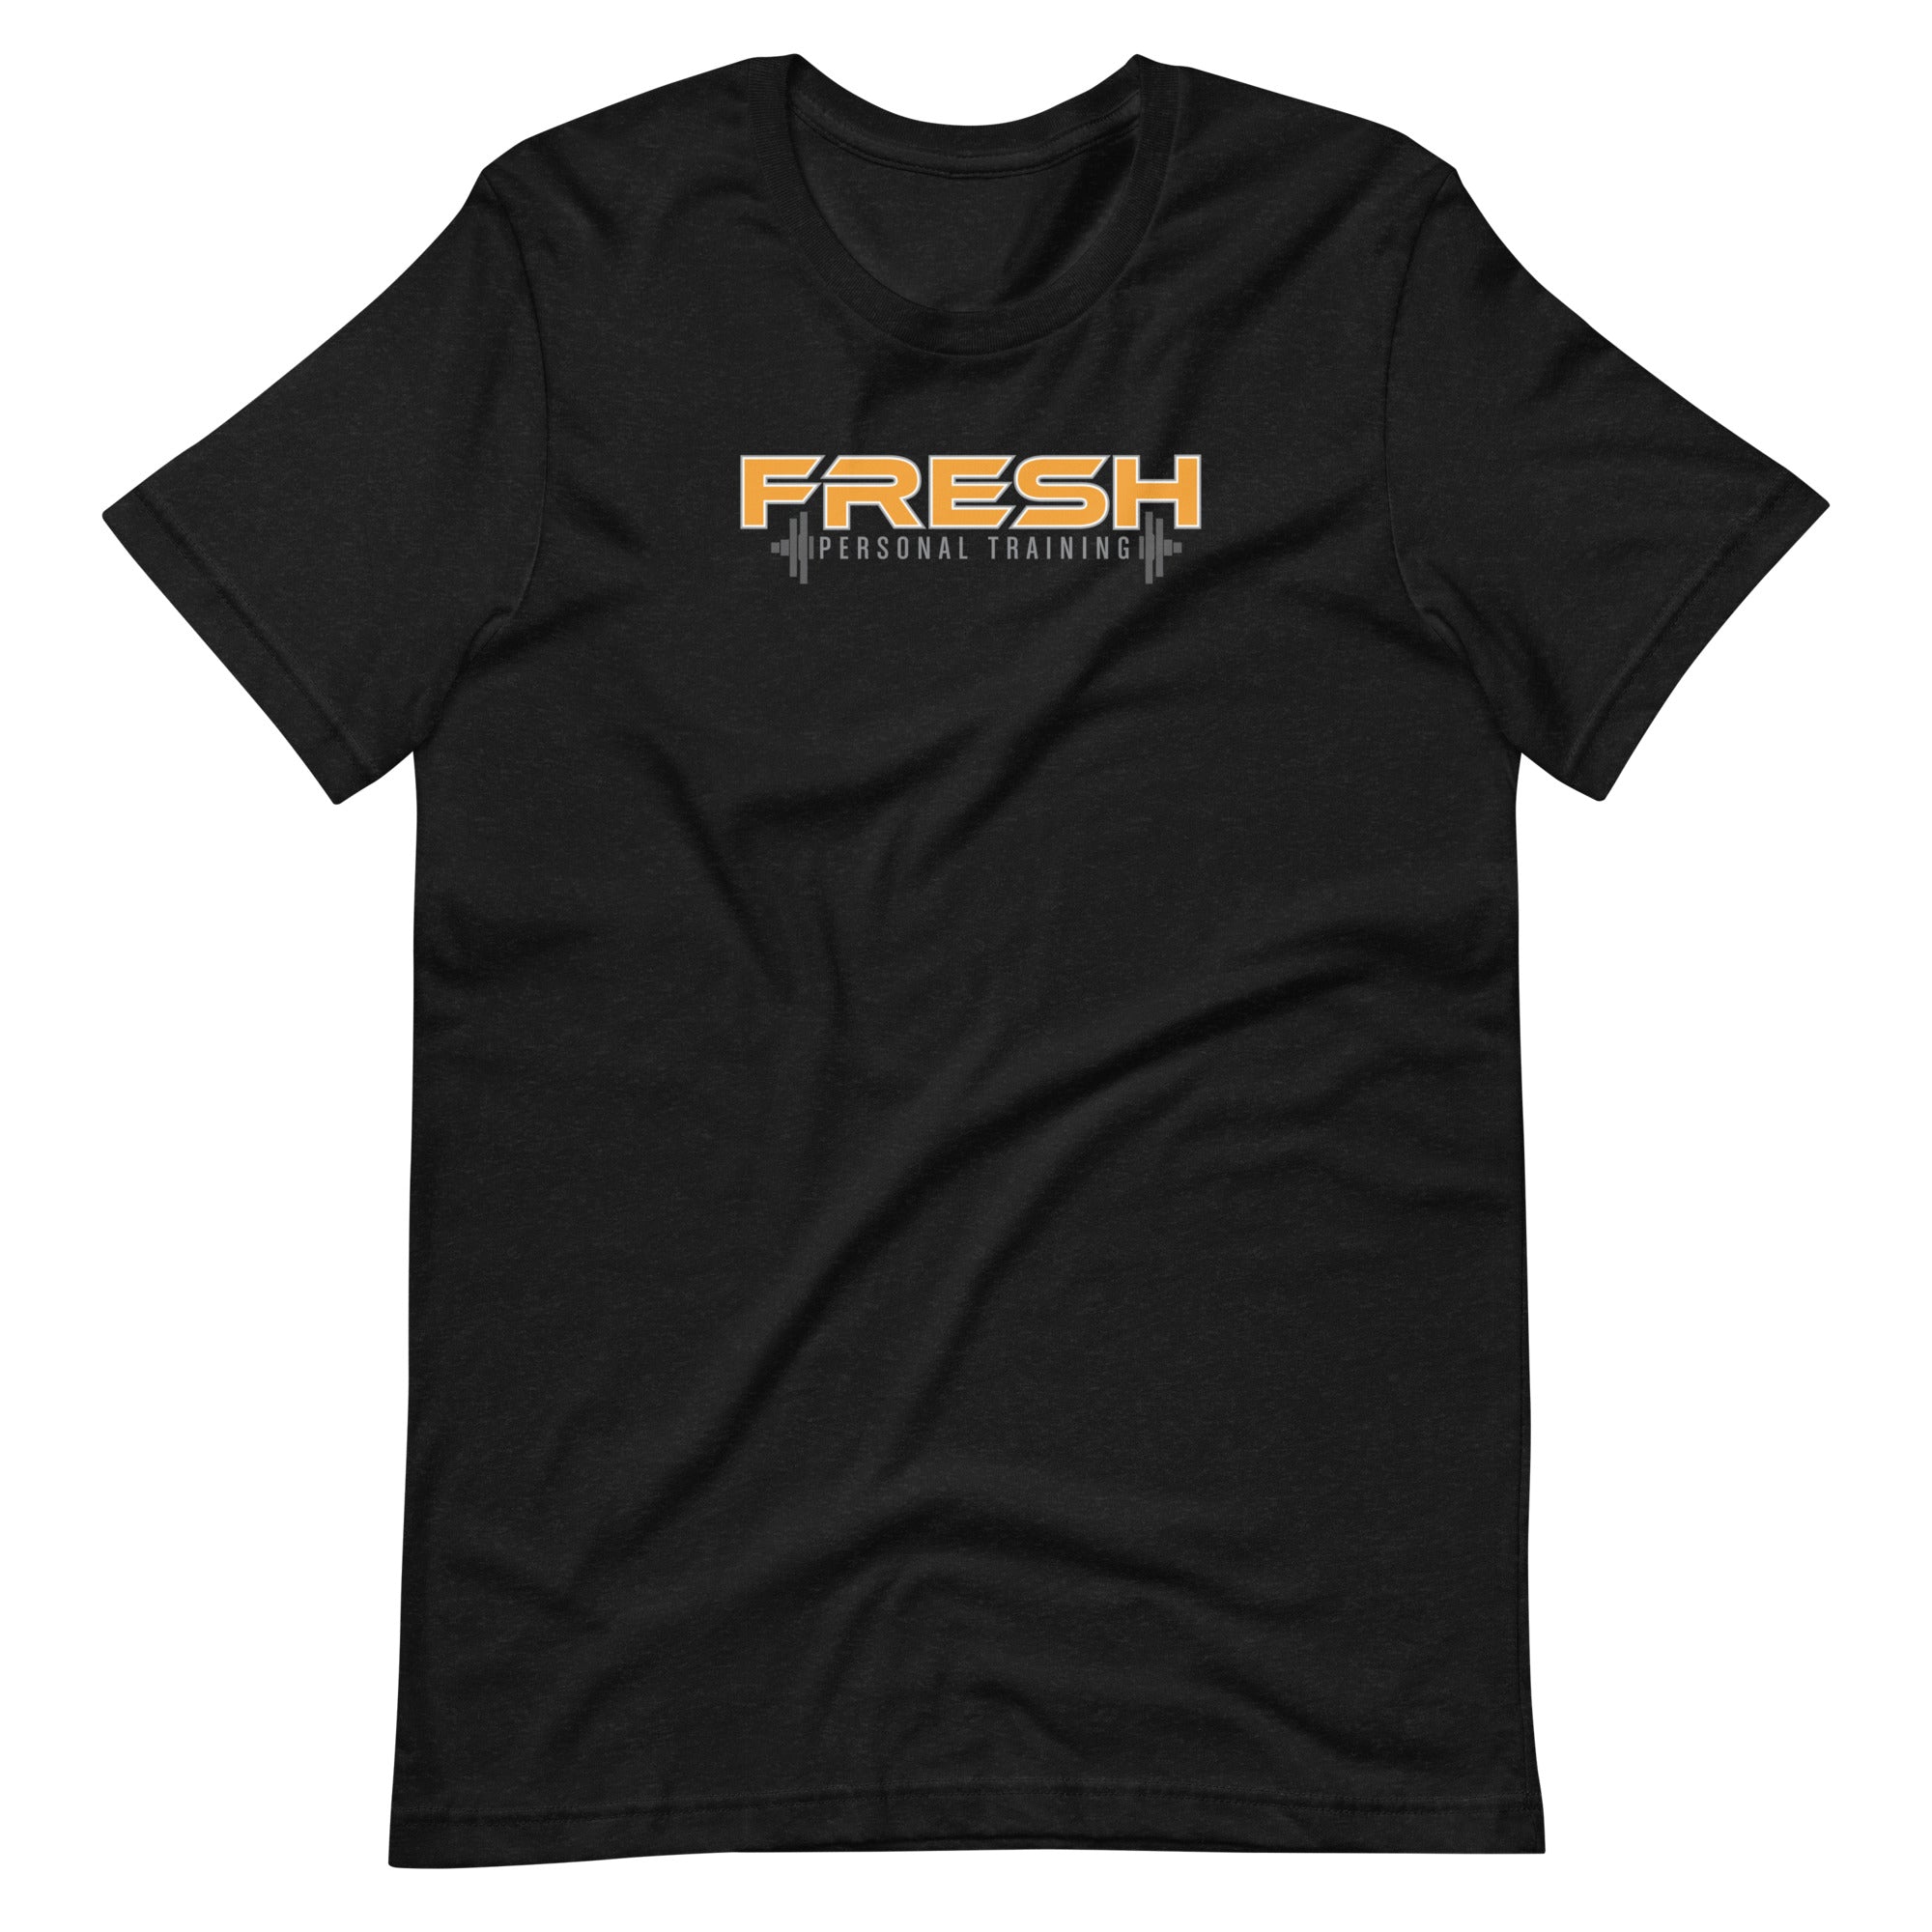 Fresh Level Up: Platinum | Unisex t-shirt